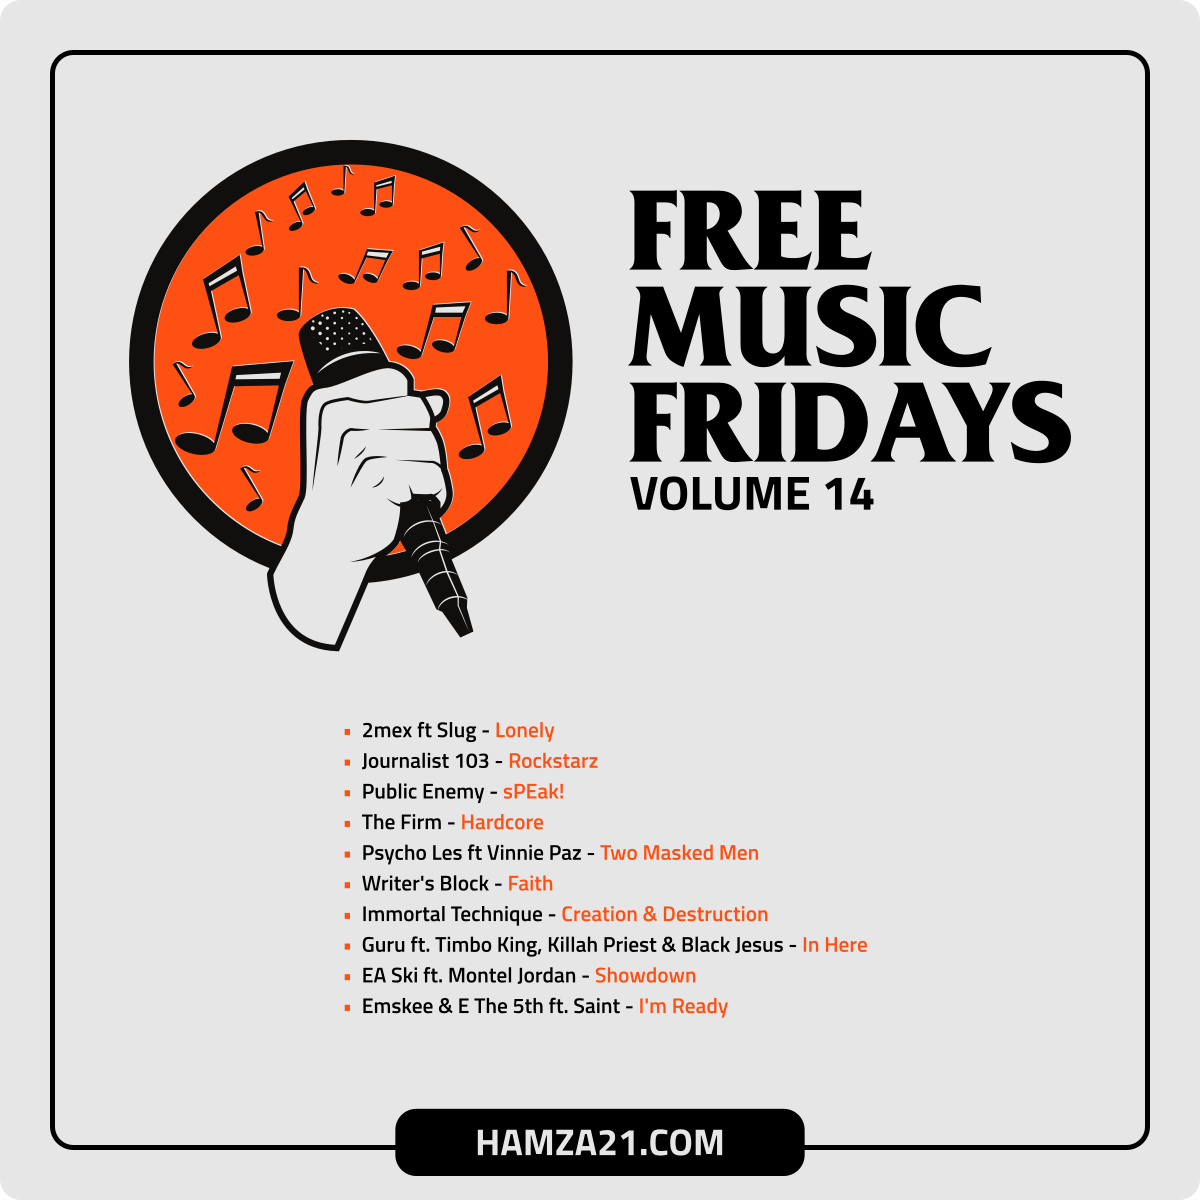 FreeMusicFridays Volume 14